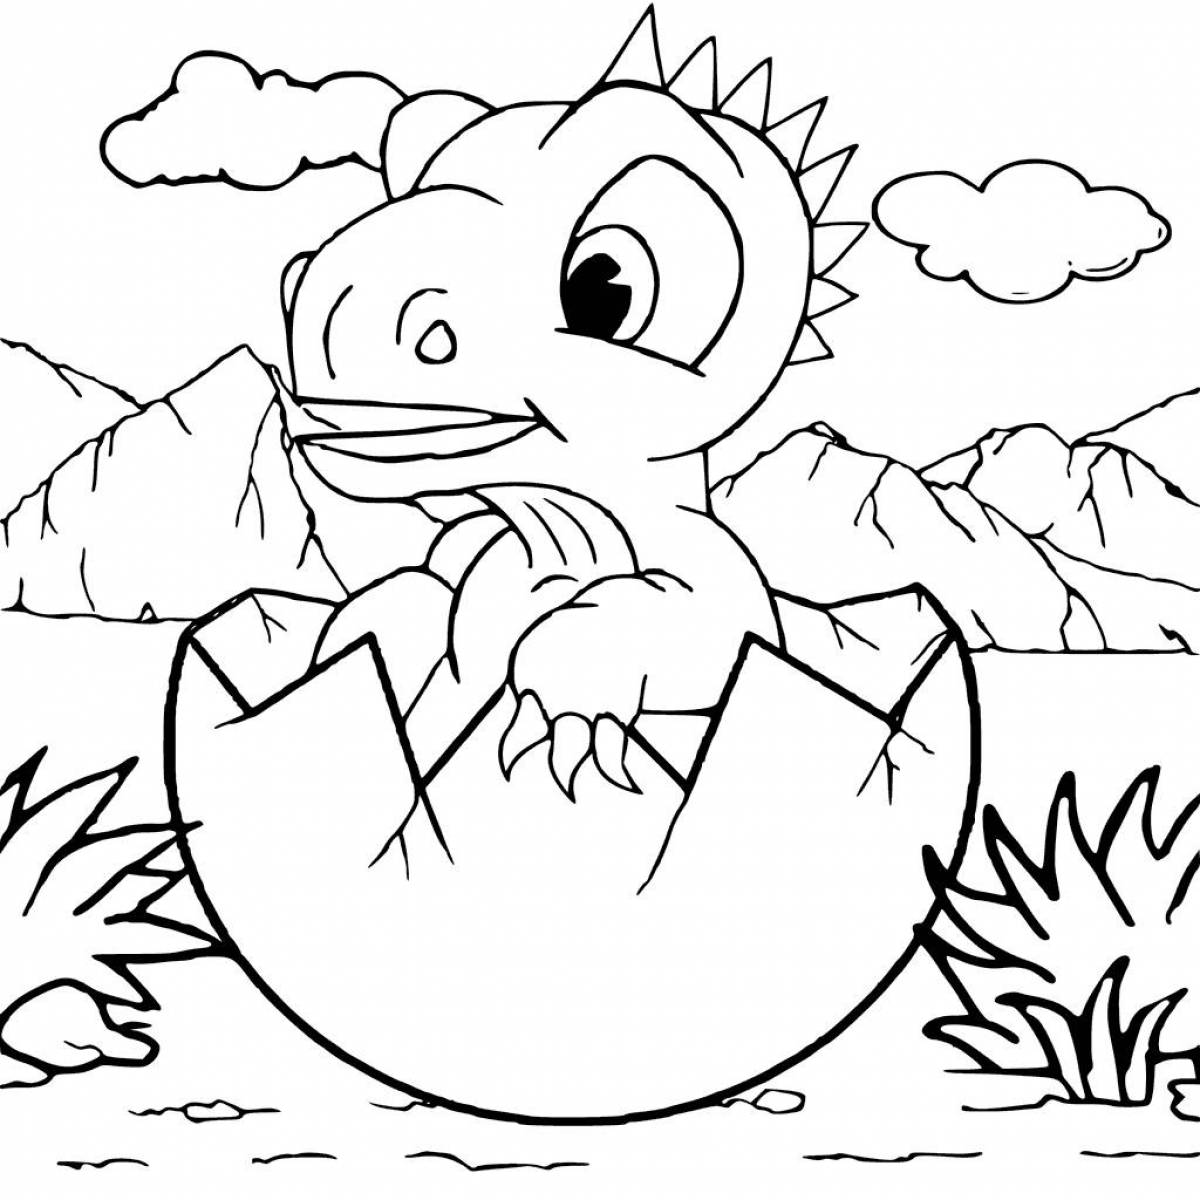 Раскраски динозавры формат а4. Динозавры / раскраска. Раскраска "Динозаврики". Динозавр раскраска для детей. Разукрашка динозавры для детей.